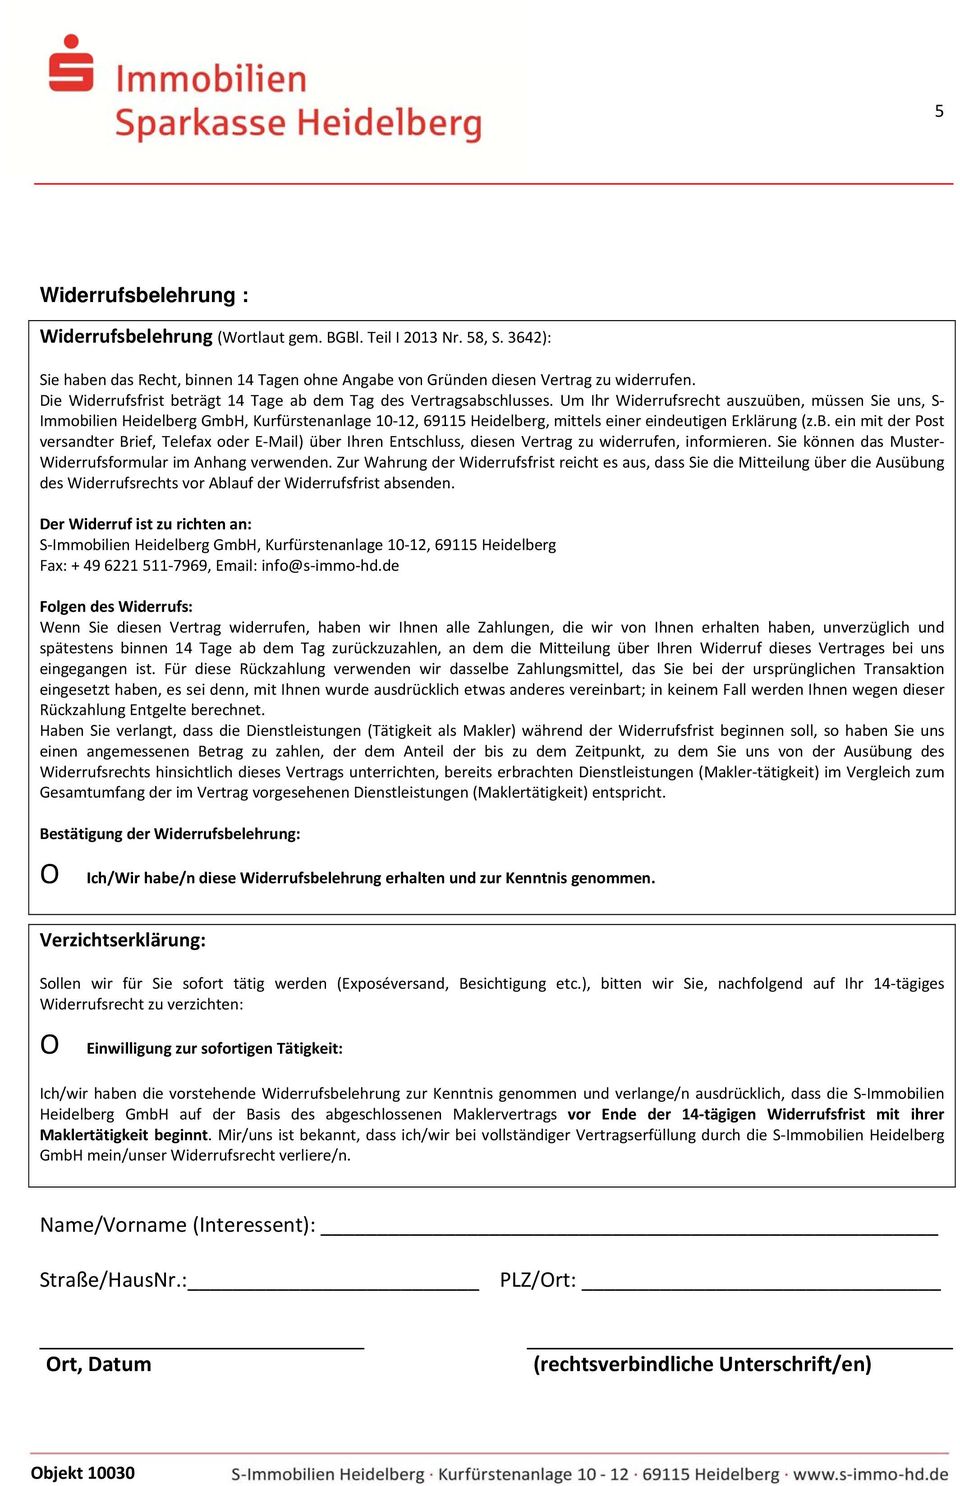 Um Ihr Widerrufsrecht auszuüben, müssen Sie uns, S Immobilien Heidelberg GmbH, Kurfürstenanlage 10 12, 69115 Heidelberg, mittels einer eindeutigen Erklärung (z.b. ein mit der Post versandter Brief, Telefax oder E Mail) über Ihren Entschluss, diesen Vertrag zu widerrufen, informieren.